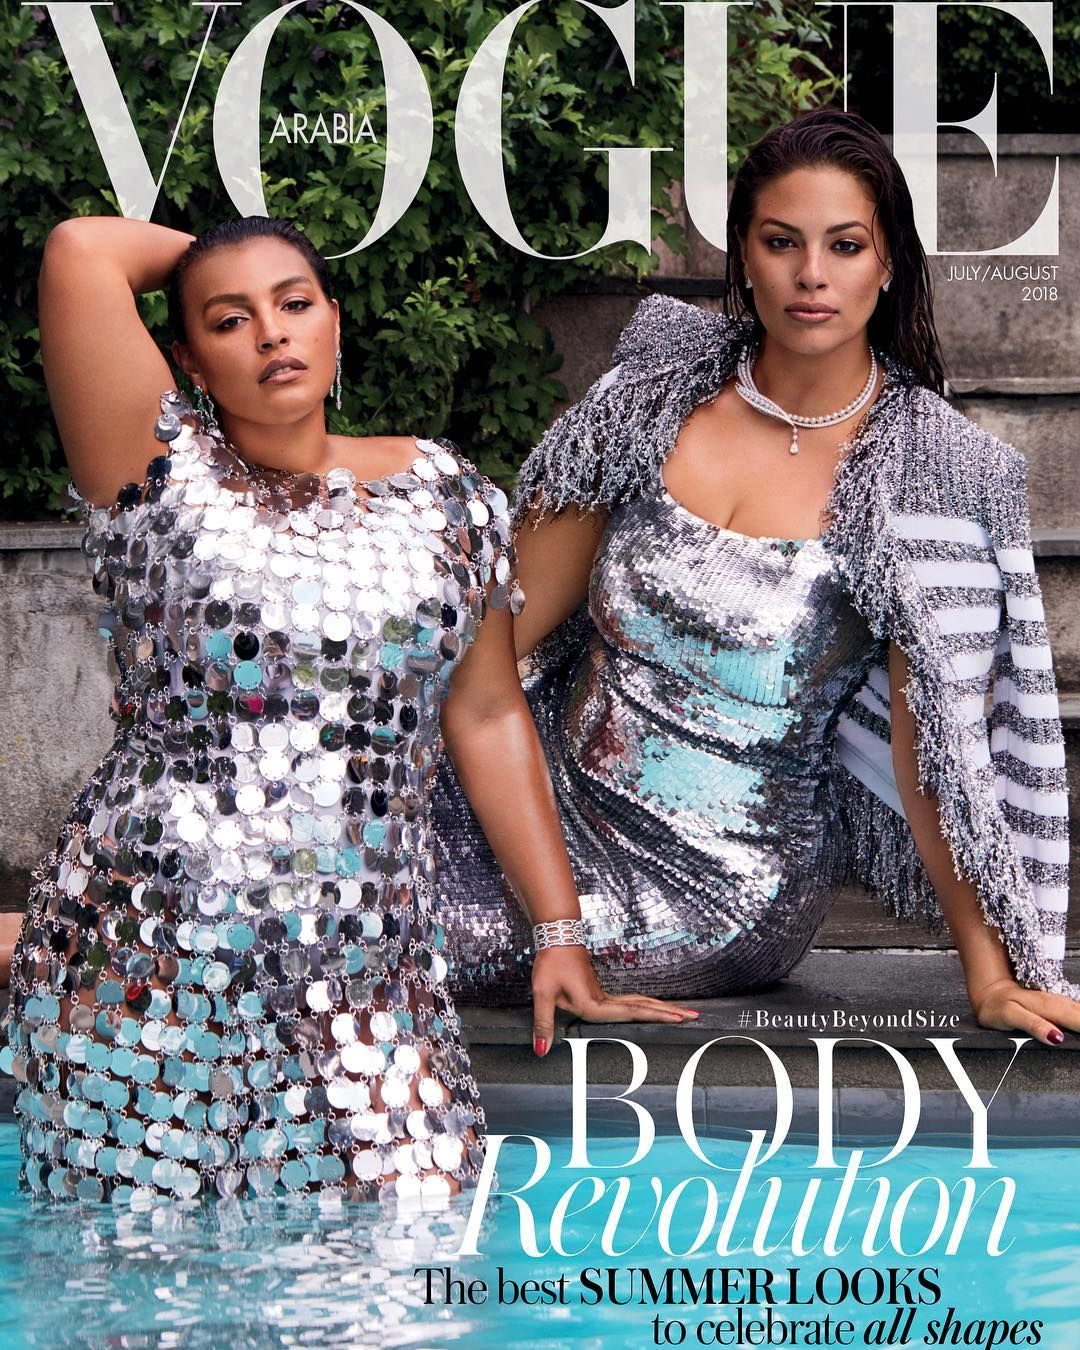 Вперше на обкладинці арабського Vogue з'явилися моделі plus size